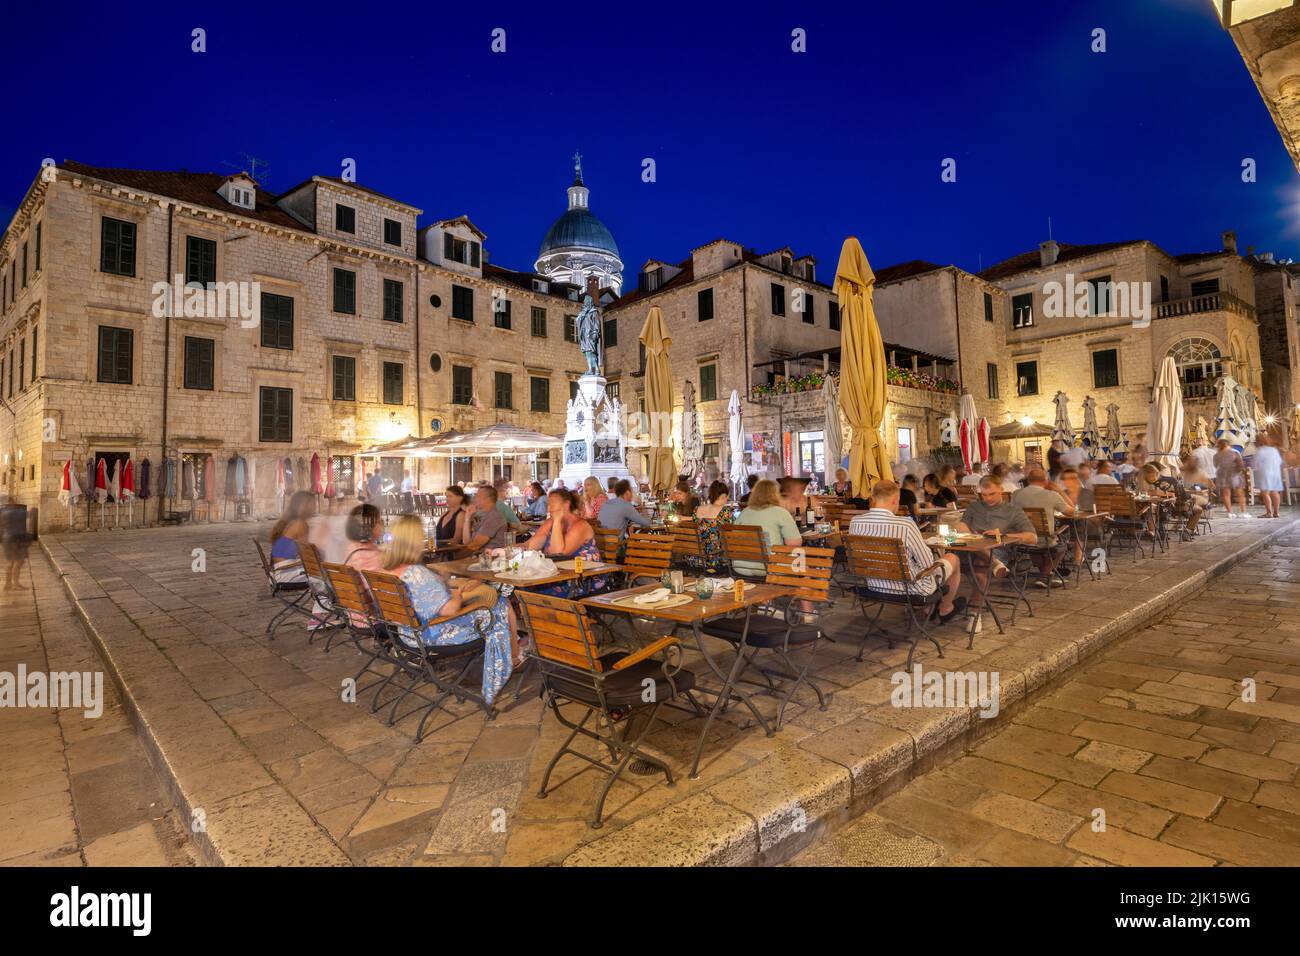 Les personnes qui mangent au restaurant en plein air la nuit dans la vieille ville, Dubrovnik, Croatie, Europe Banque D'Images